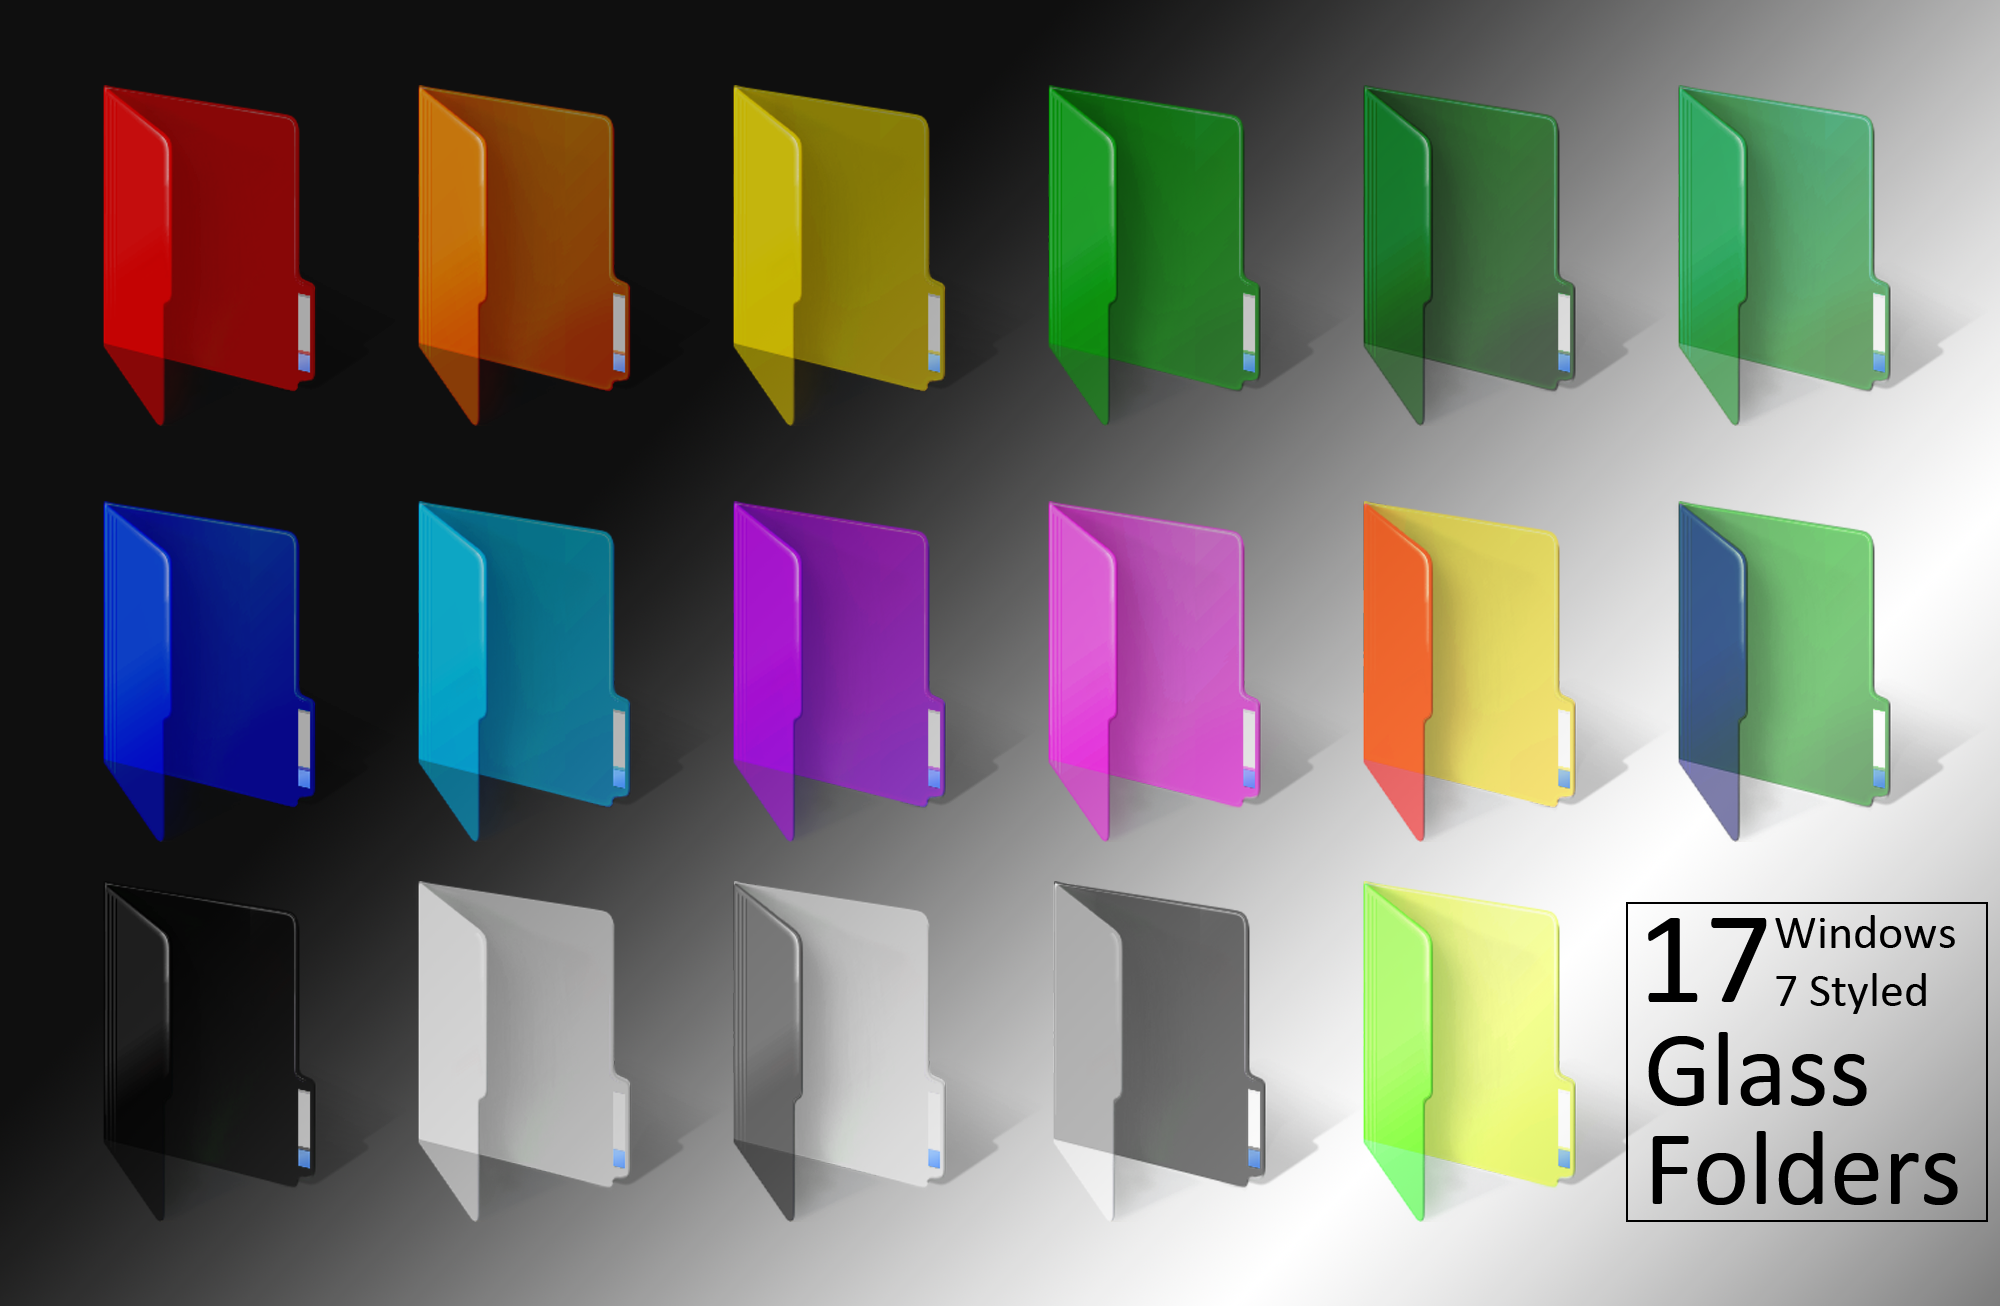 Windows 7 Coloredglass Folders By Bonscha On Deviantart